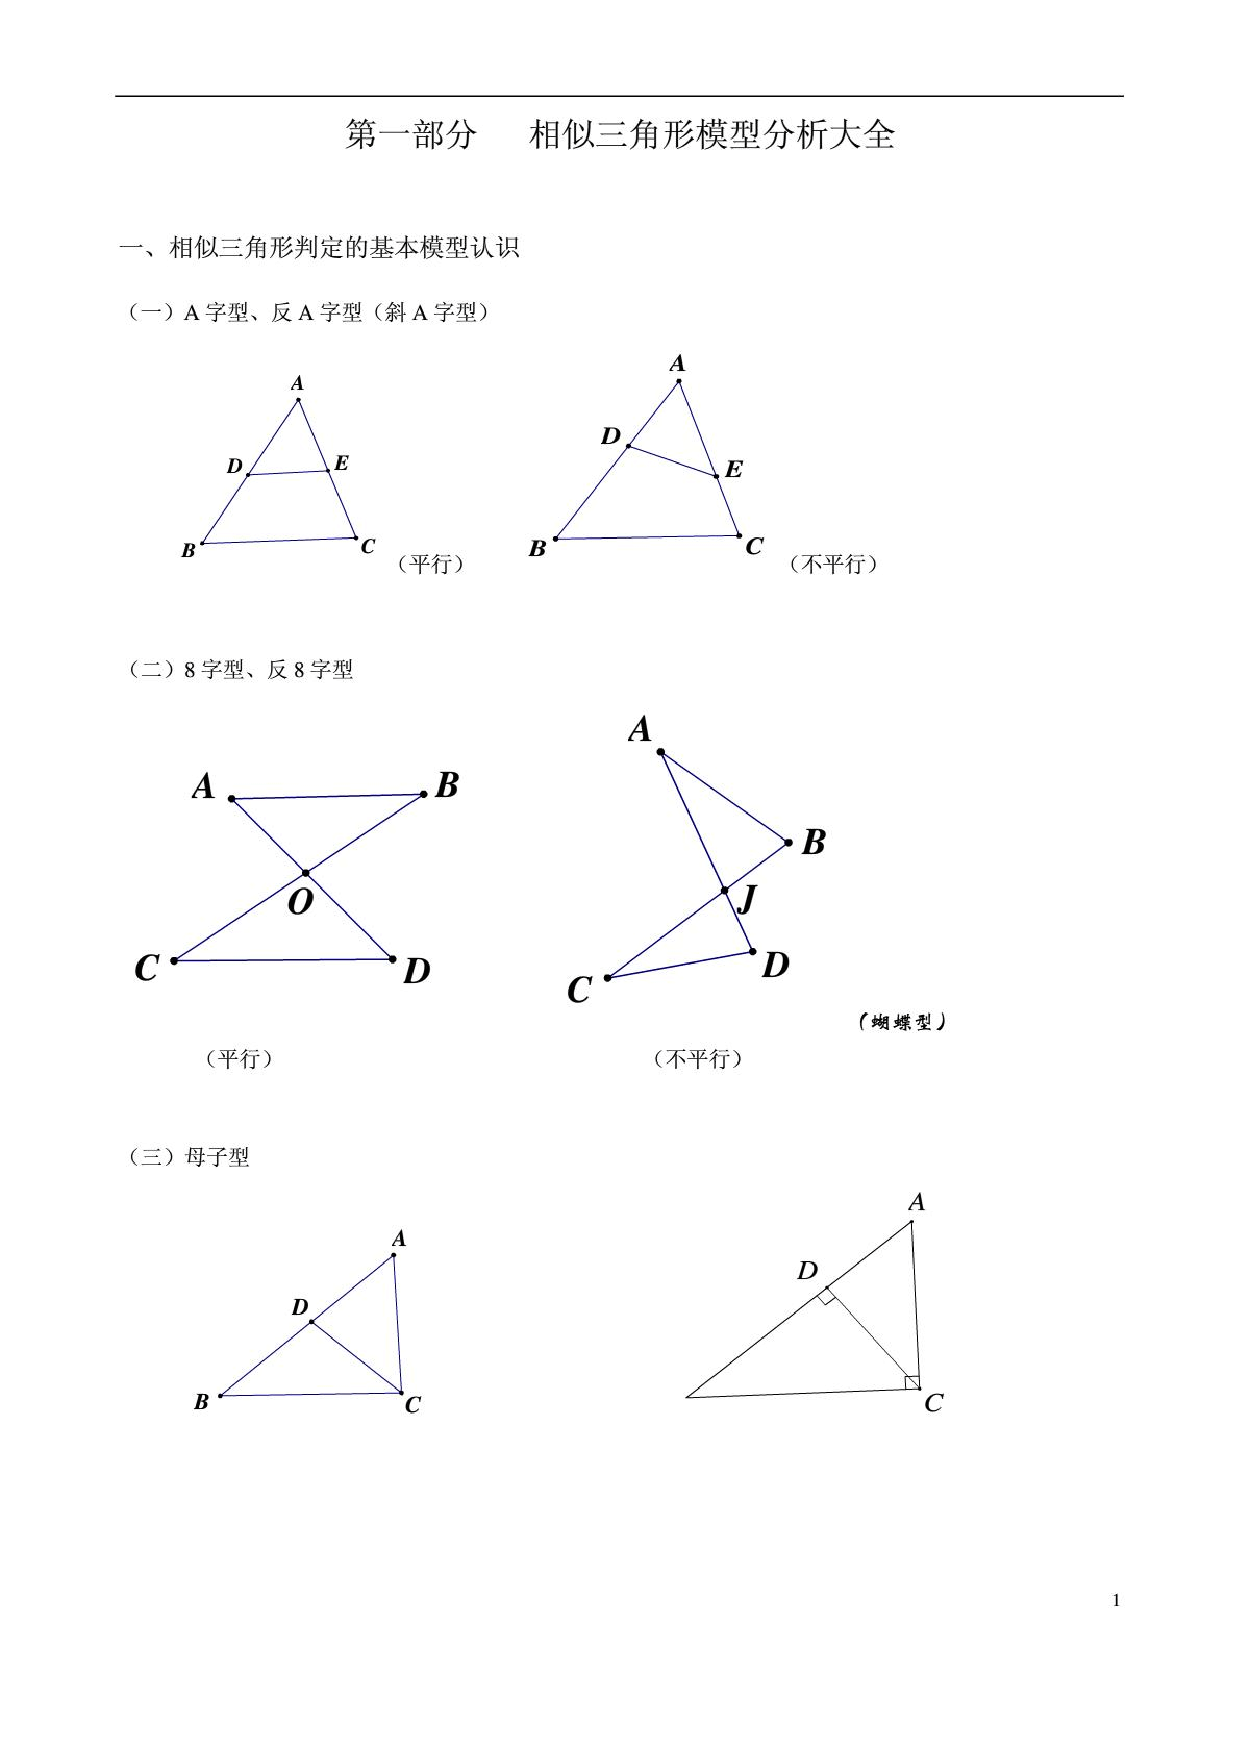 相似三角形常见经典模型总结(非常好)相似三角形常见经典模型总结(非常好)_1.png